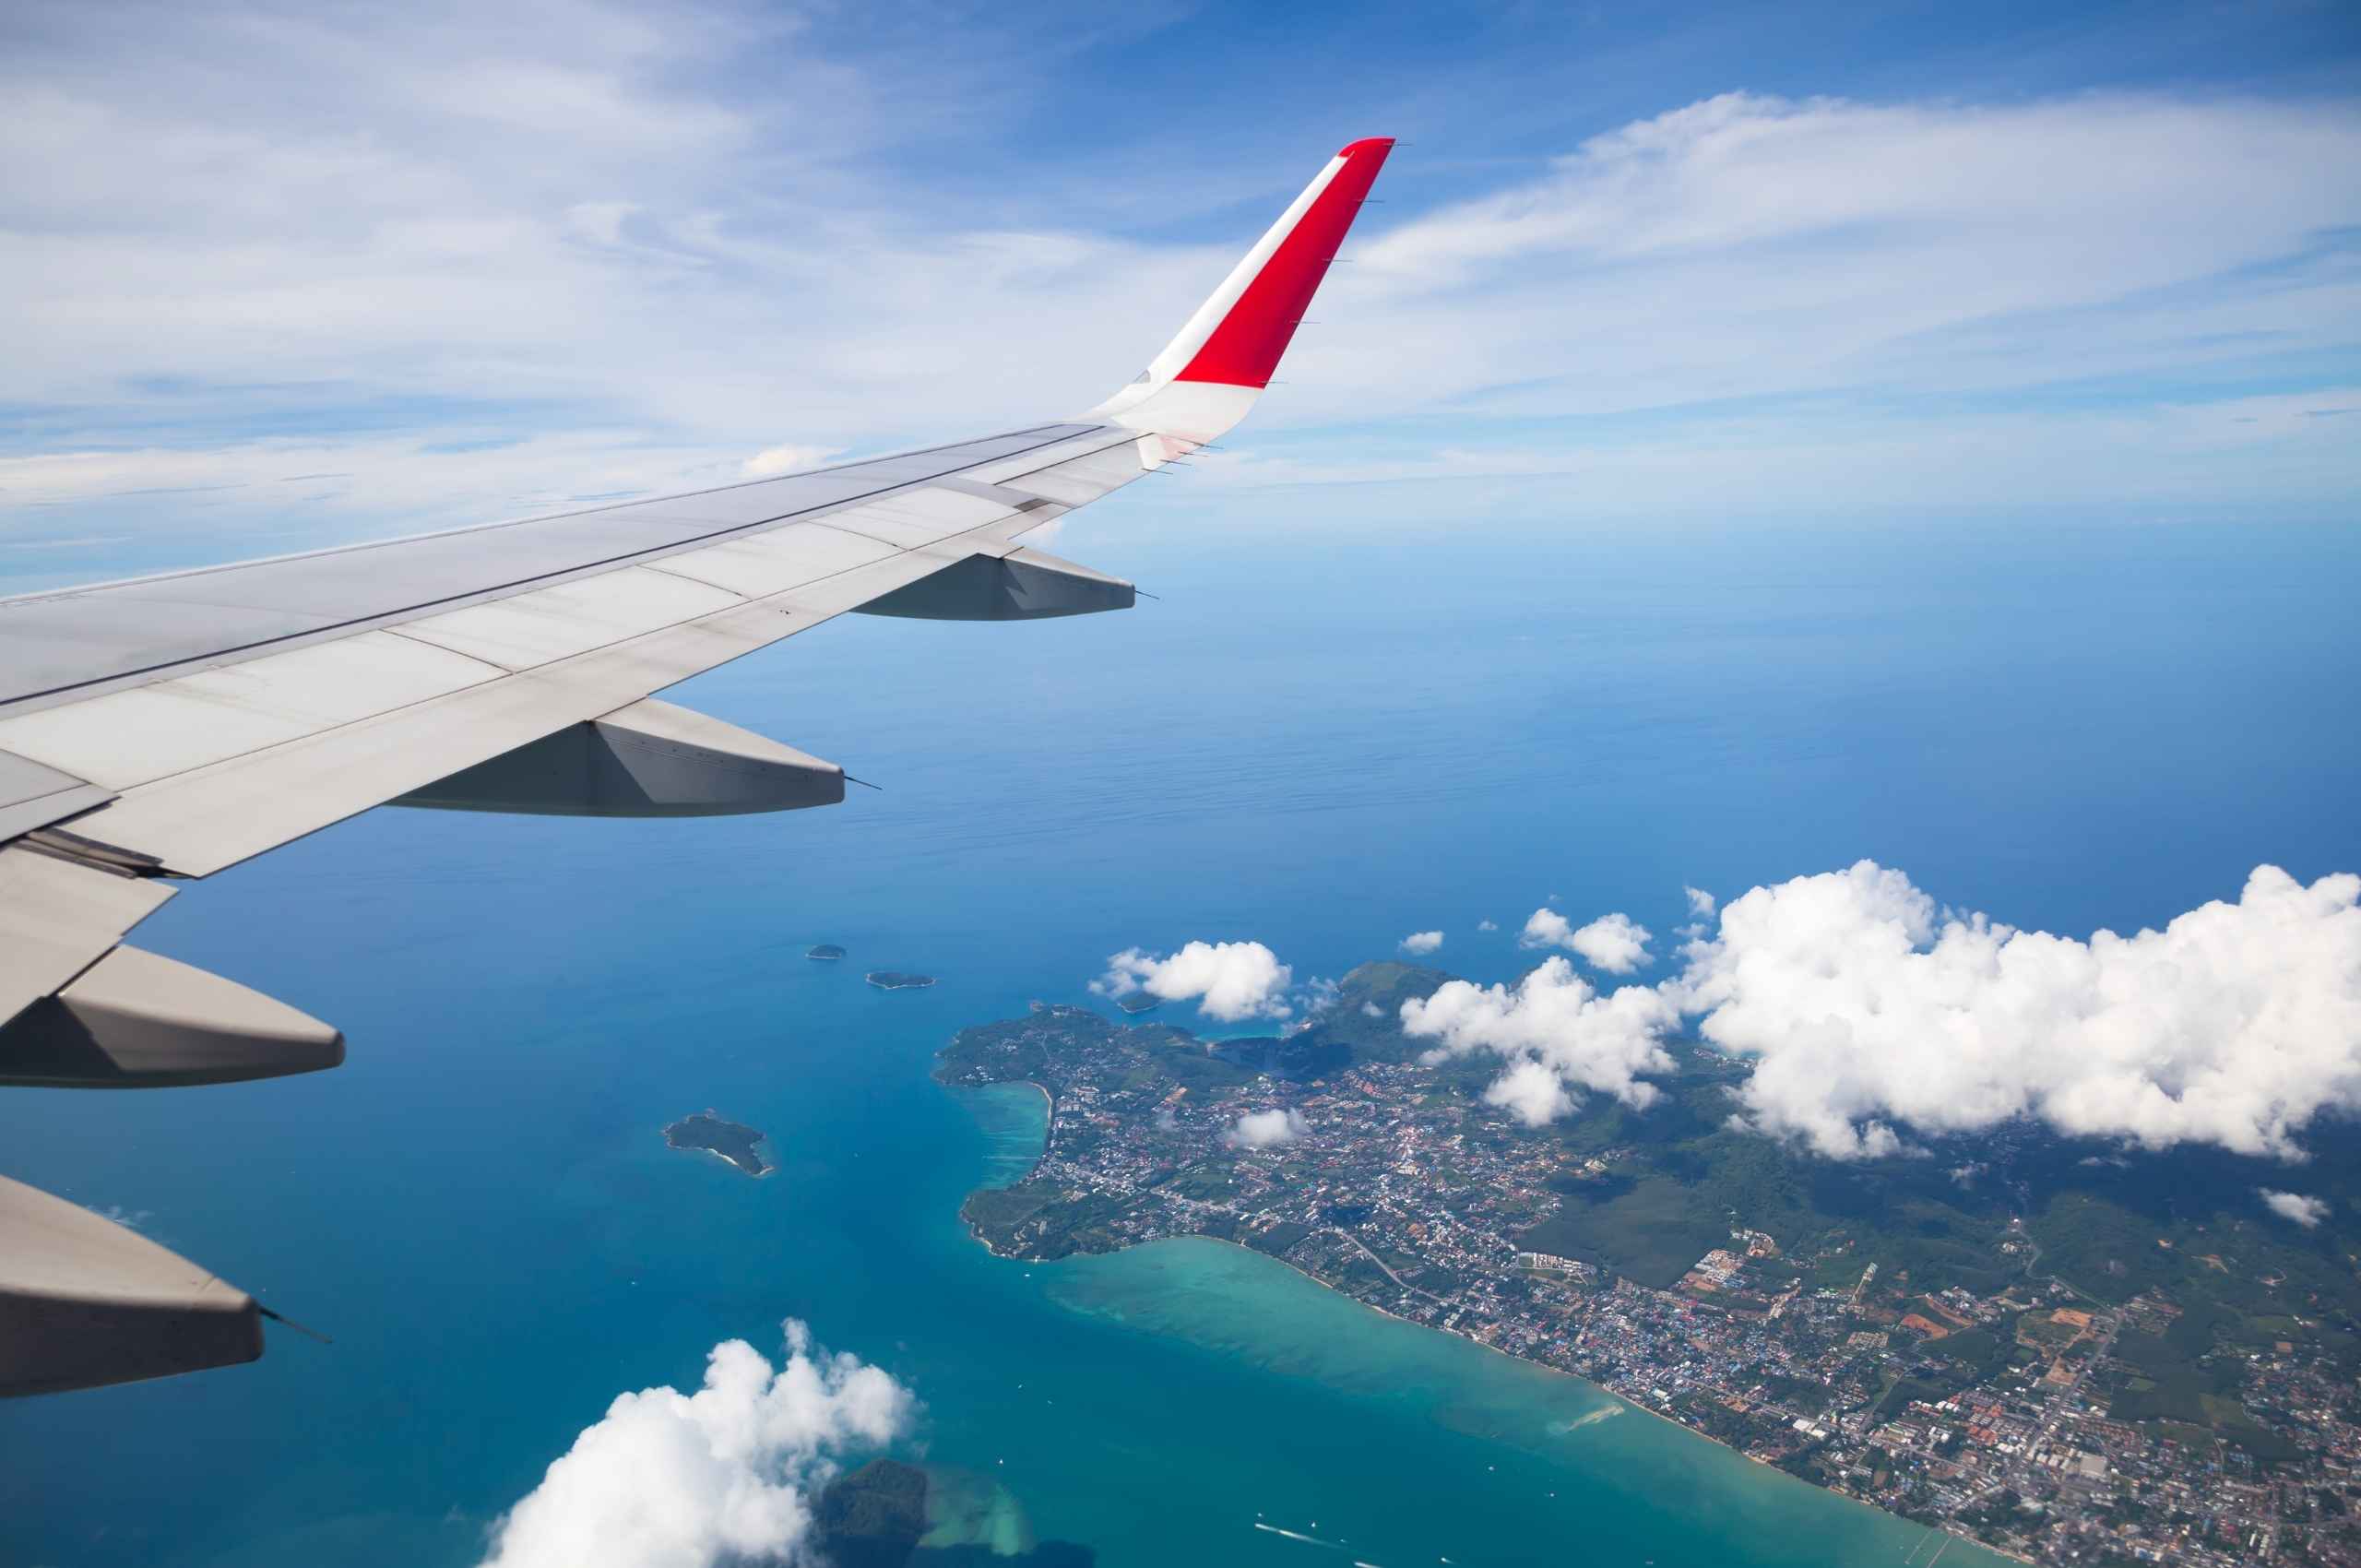 На самолете на море россия. Вид из самолета. Самолет над морем. Полет самолета над морем. Самолет над океаном.